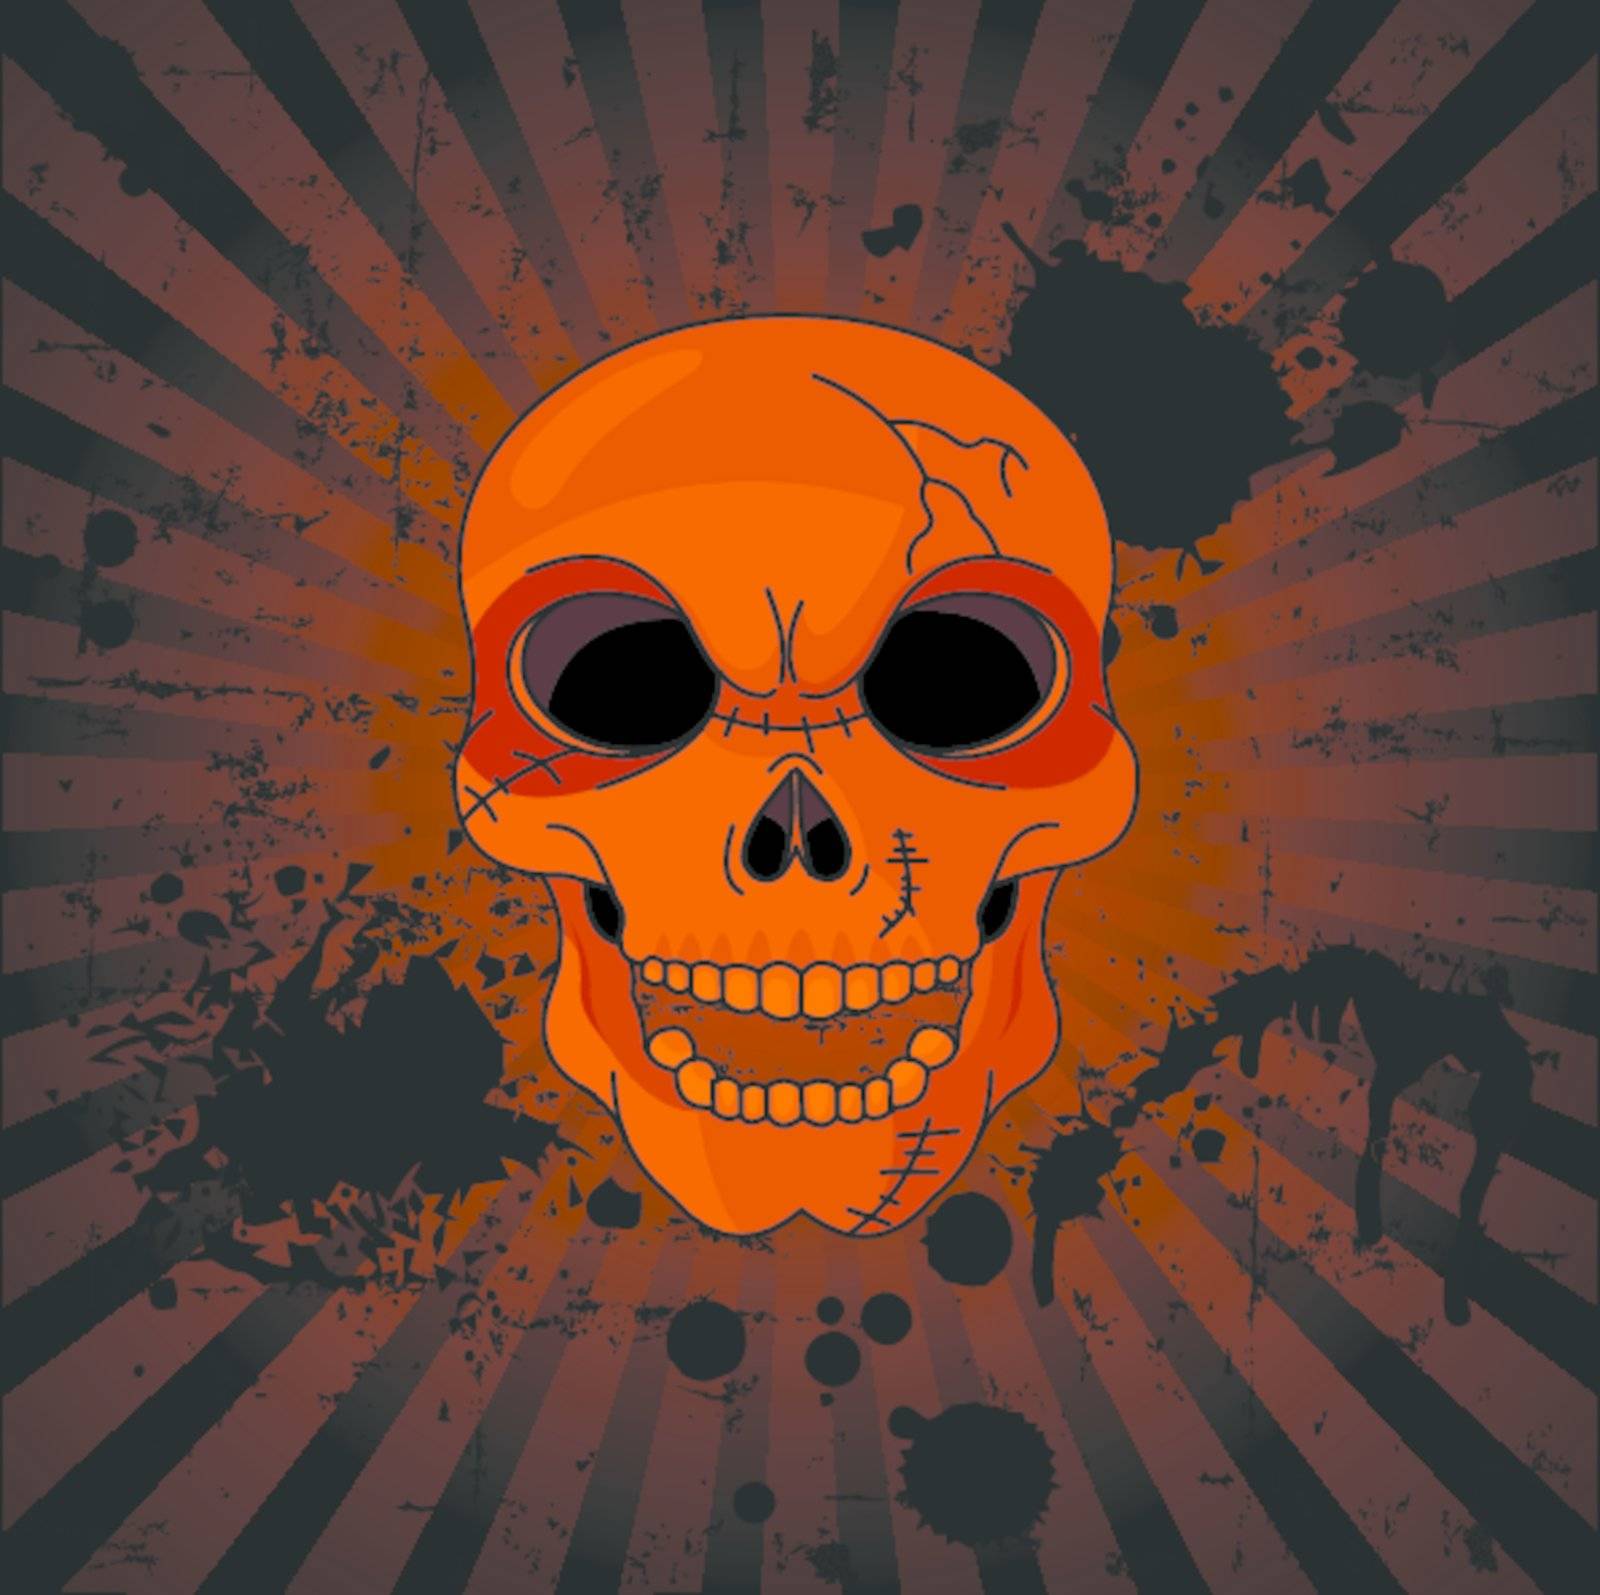 Evil Skull by Dazdraperma